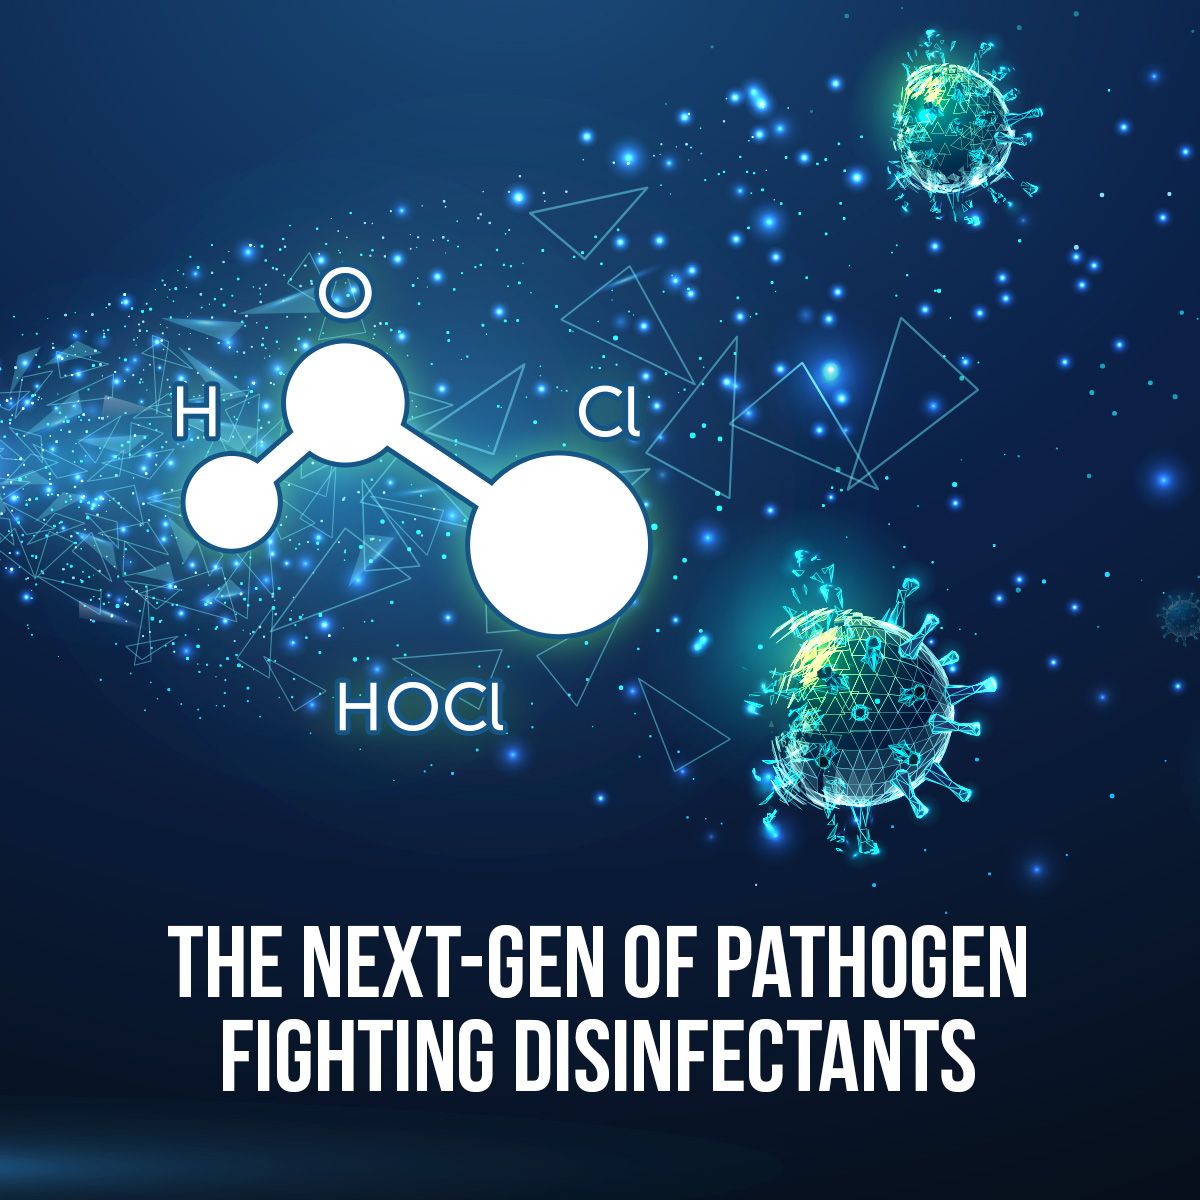 The Next-Gen of Pathogen Fighting Disinfectants